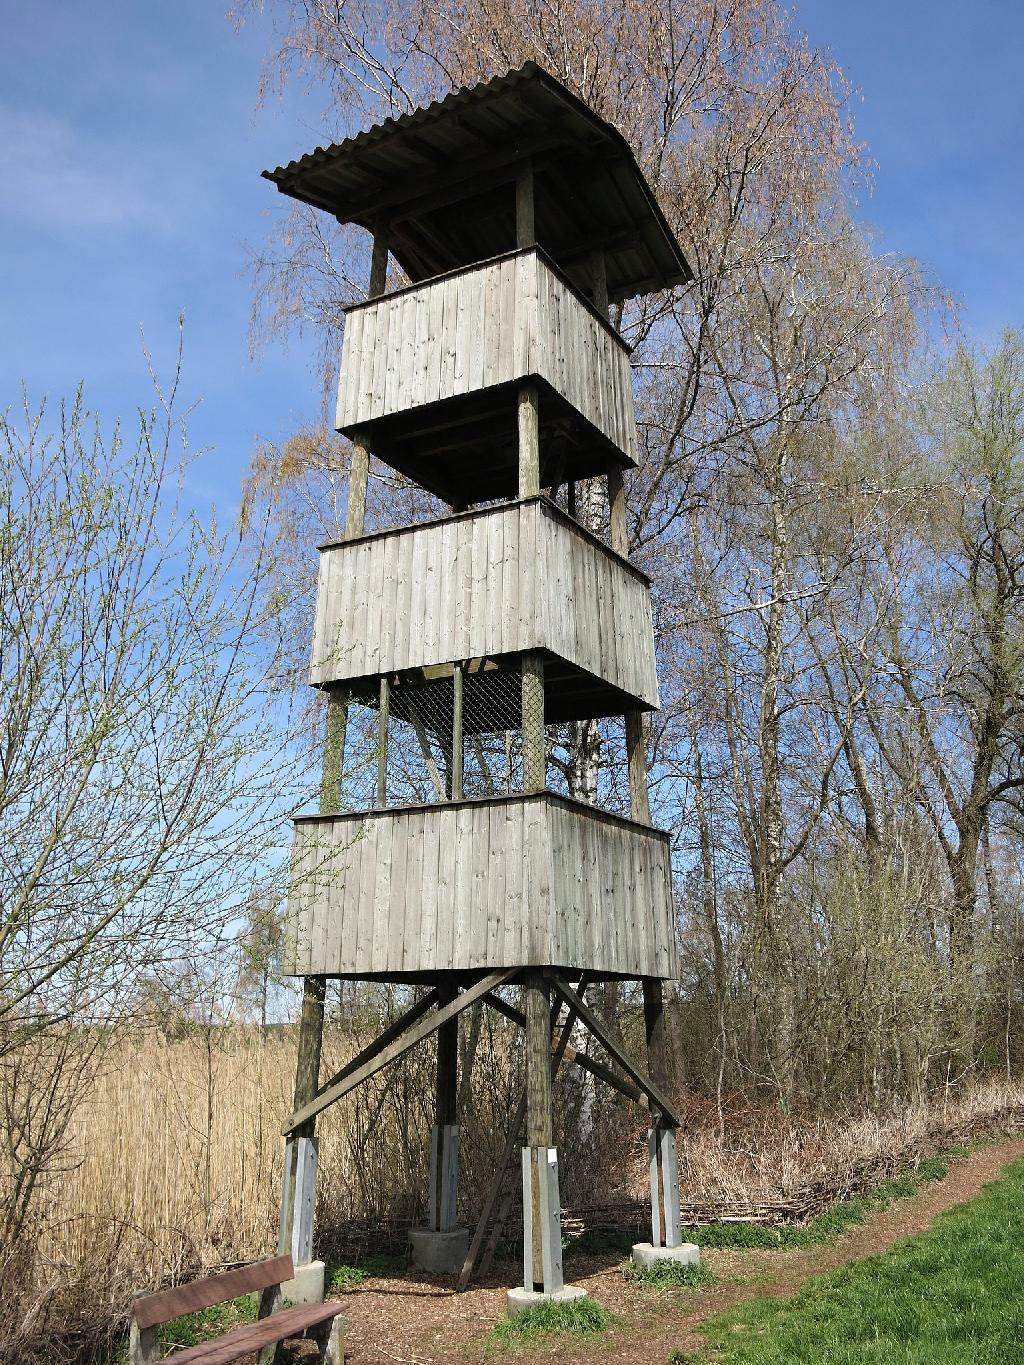 Möösliturm in Düdingen